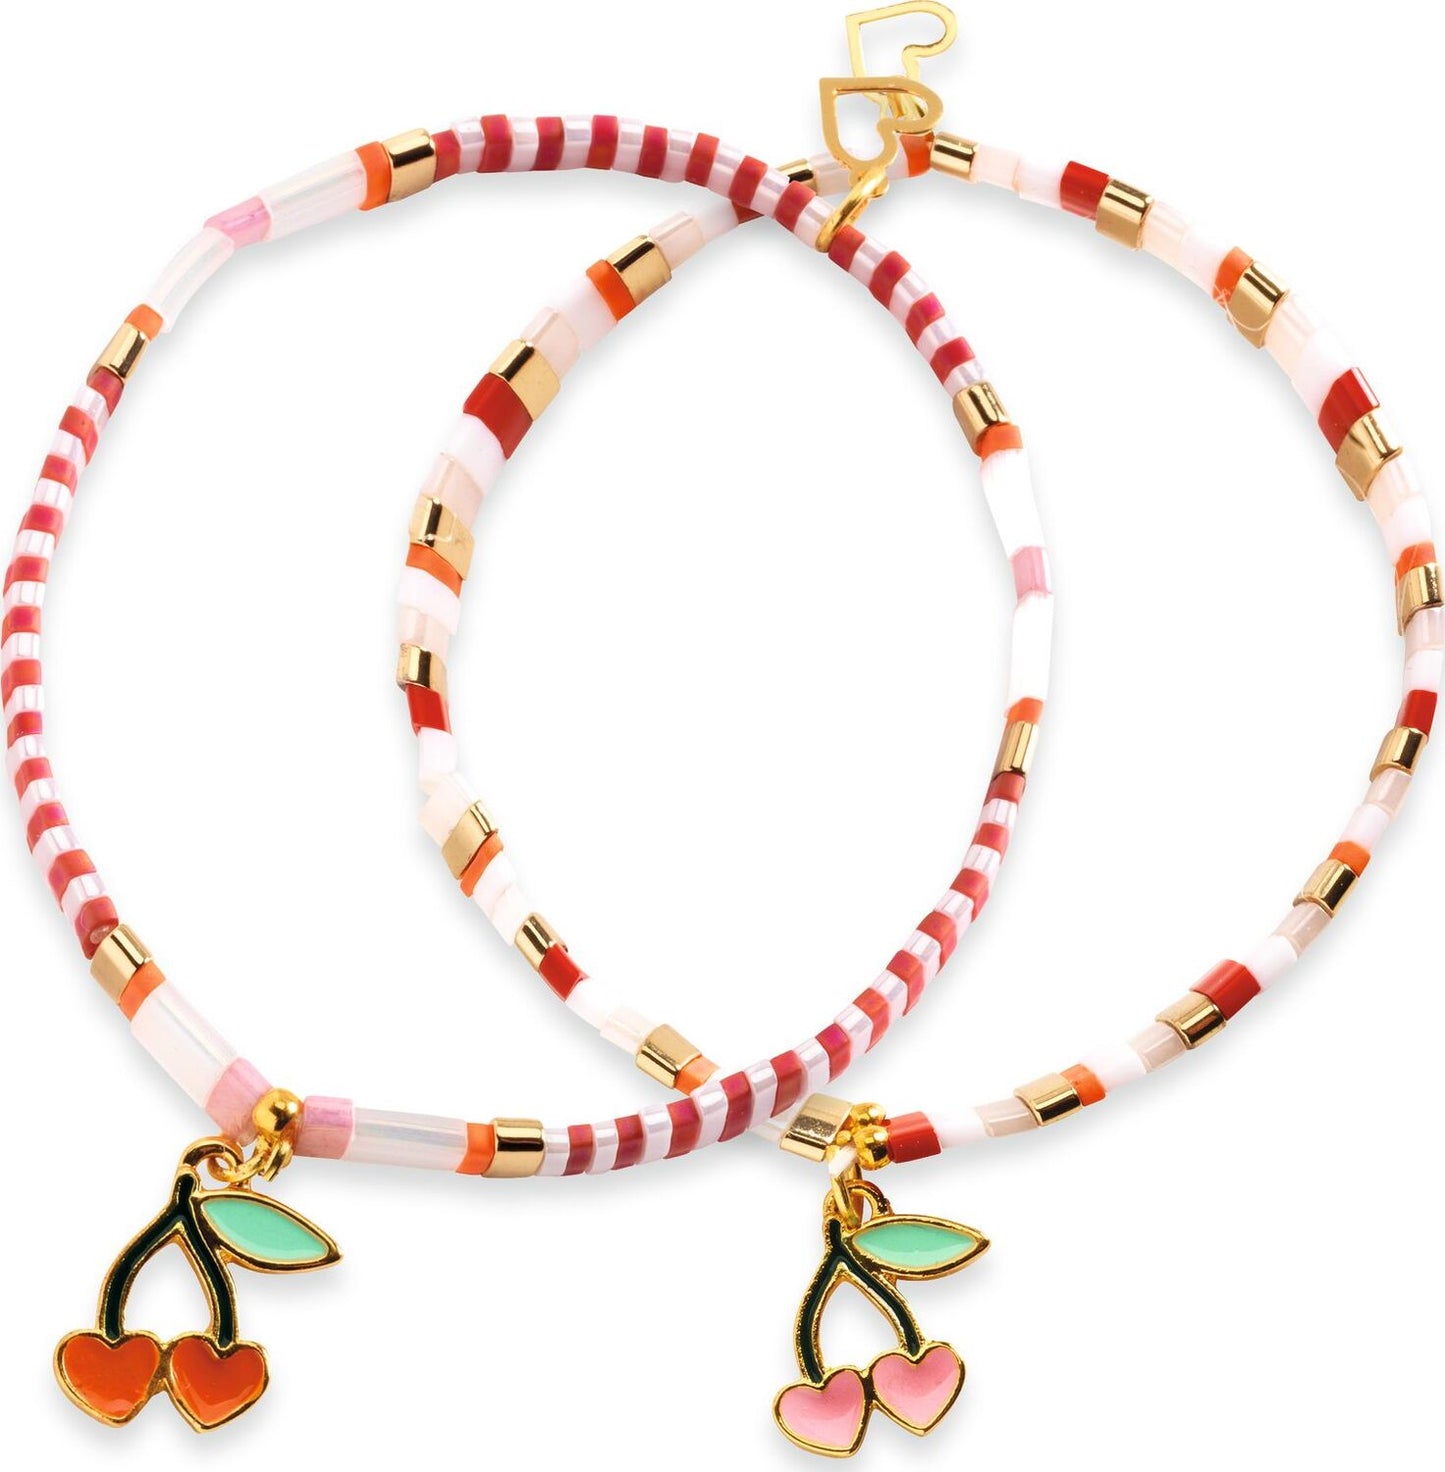 Tila and Cherries Beads & Jewelry - Djeco